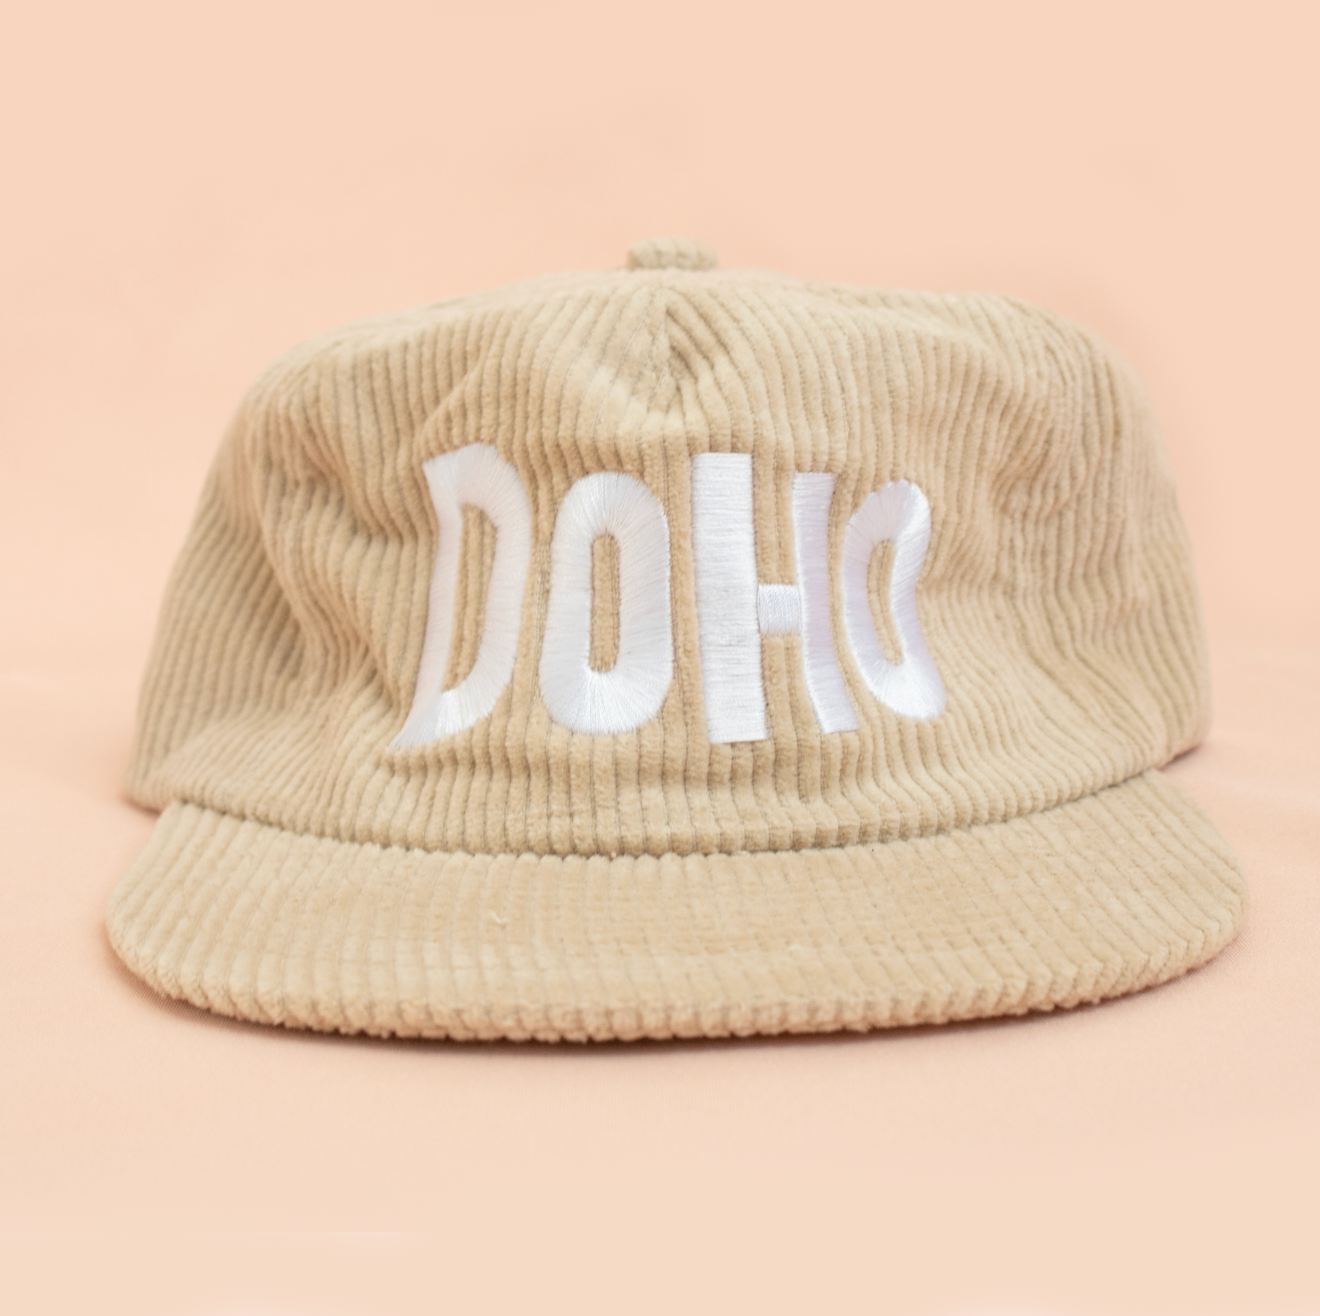 Doho Corduroy Hat